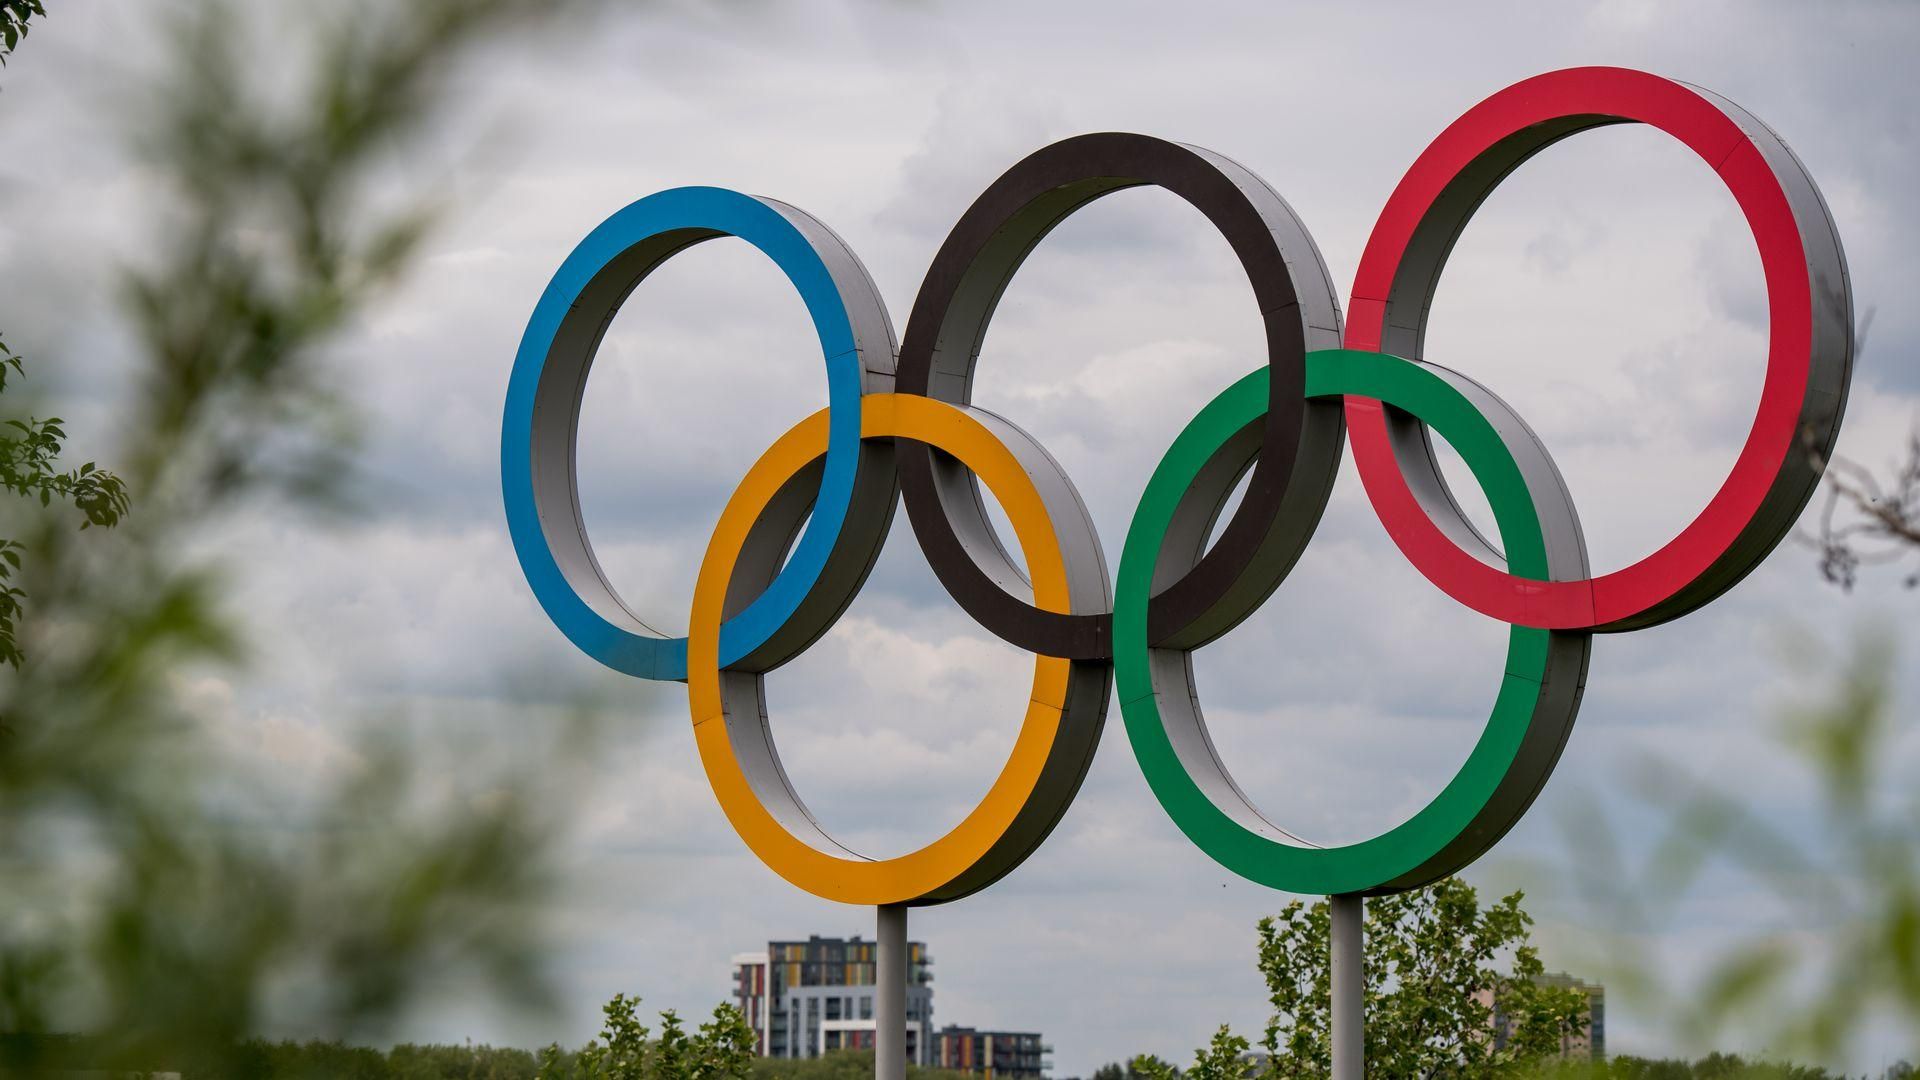 Олімпіада потрібна будь-якій державі, але є питання ціни та ефективності, – Олег Немчінов